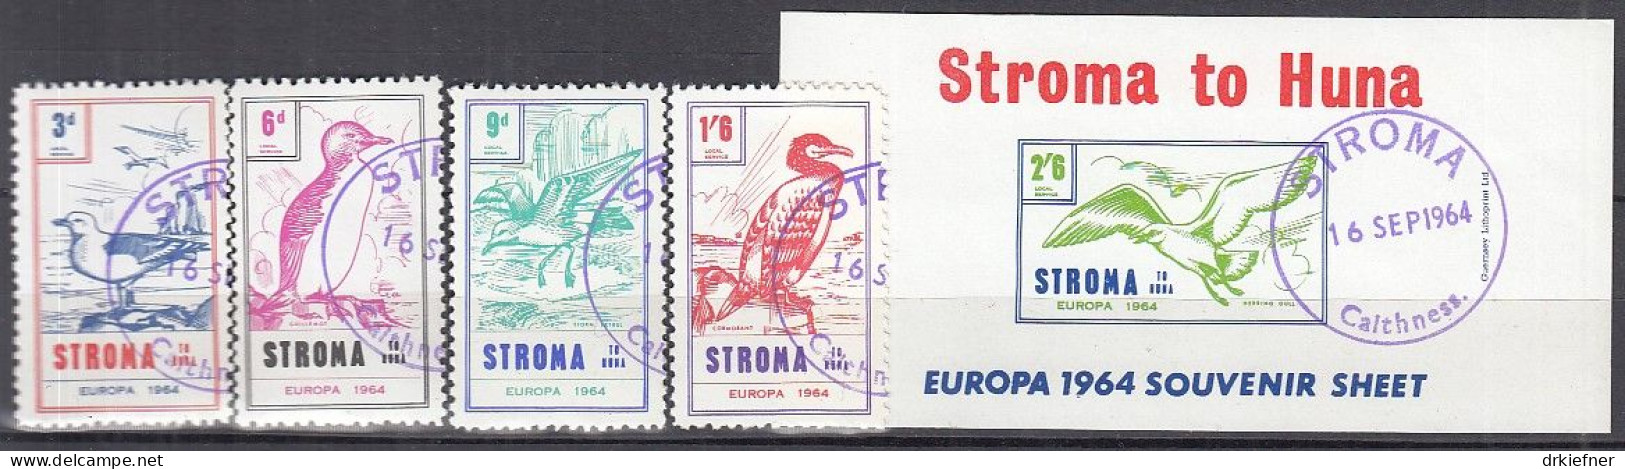 INSEL STROMA (Schottland), Nichtamtl. Briefmarken, Stroma To Huna, Block + 4 Marken, Gestempelt, Europa 1964, Vögel - Escocia